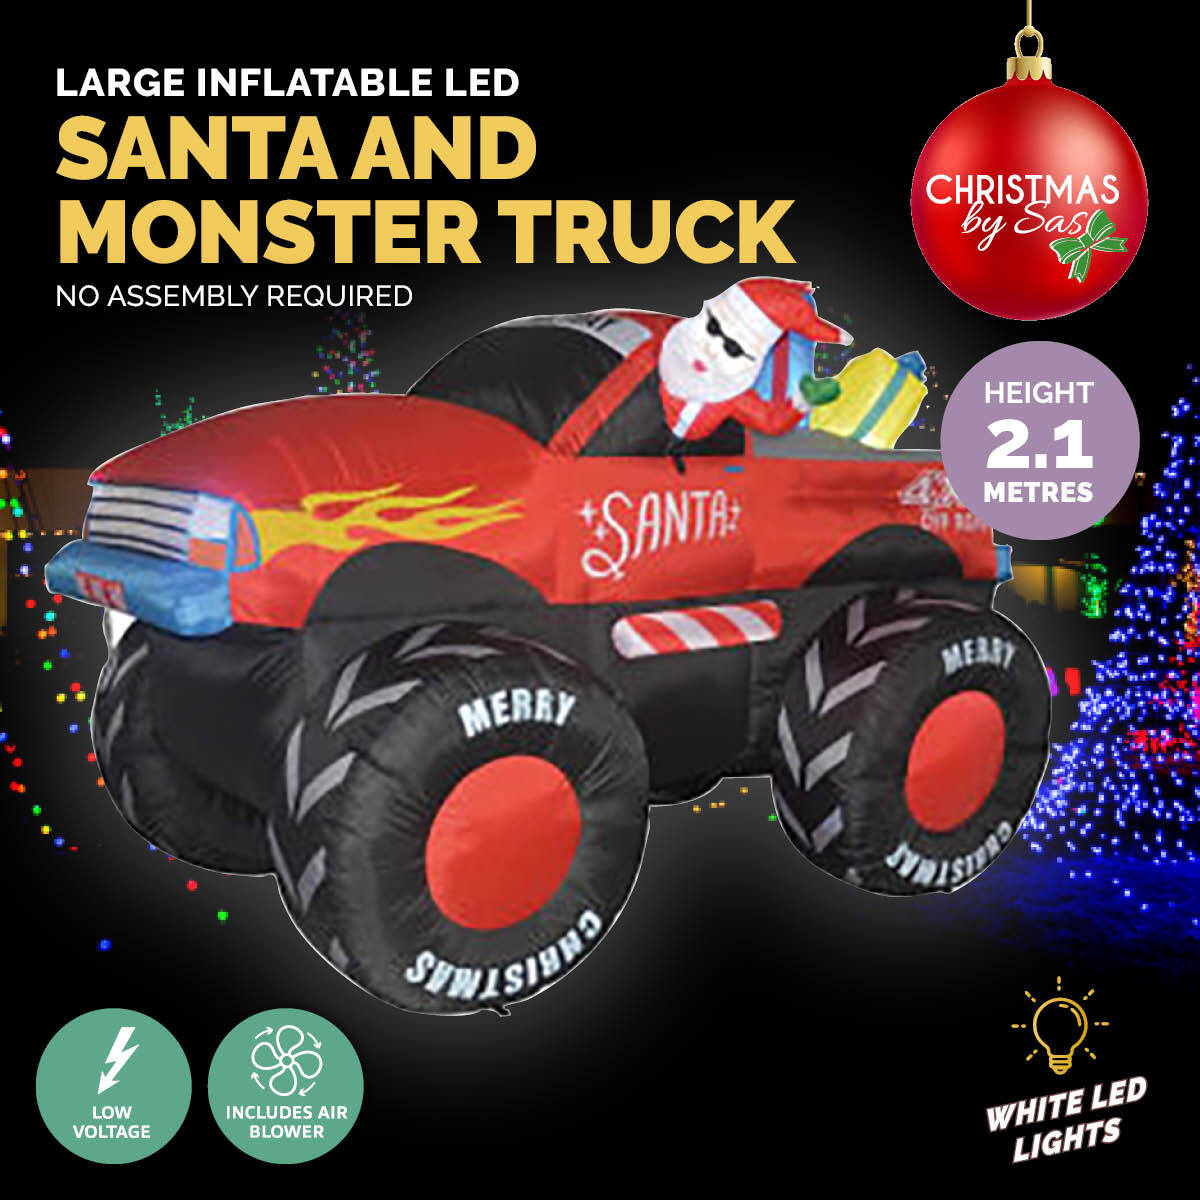 2.1m Santa & Monster Truck Built-In Blower LED Lighting